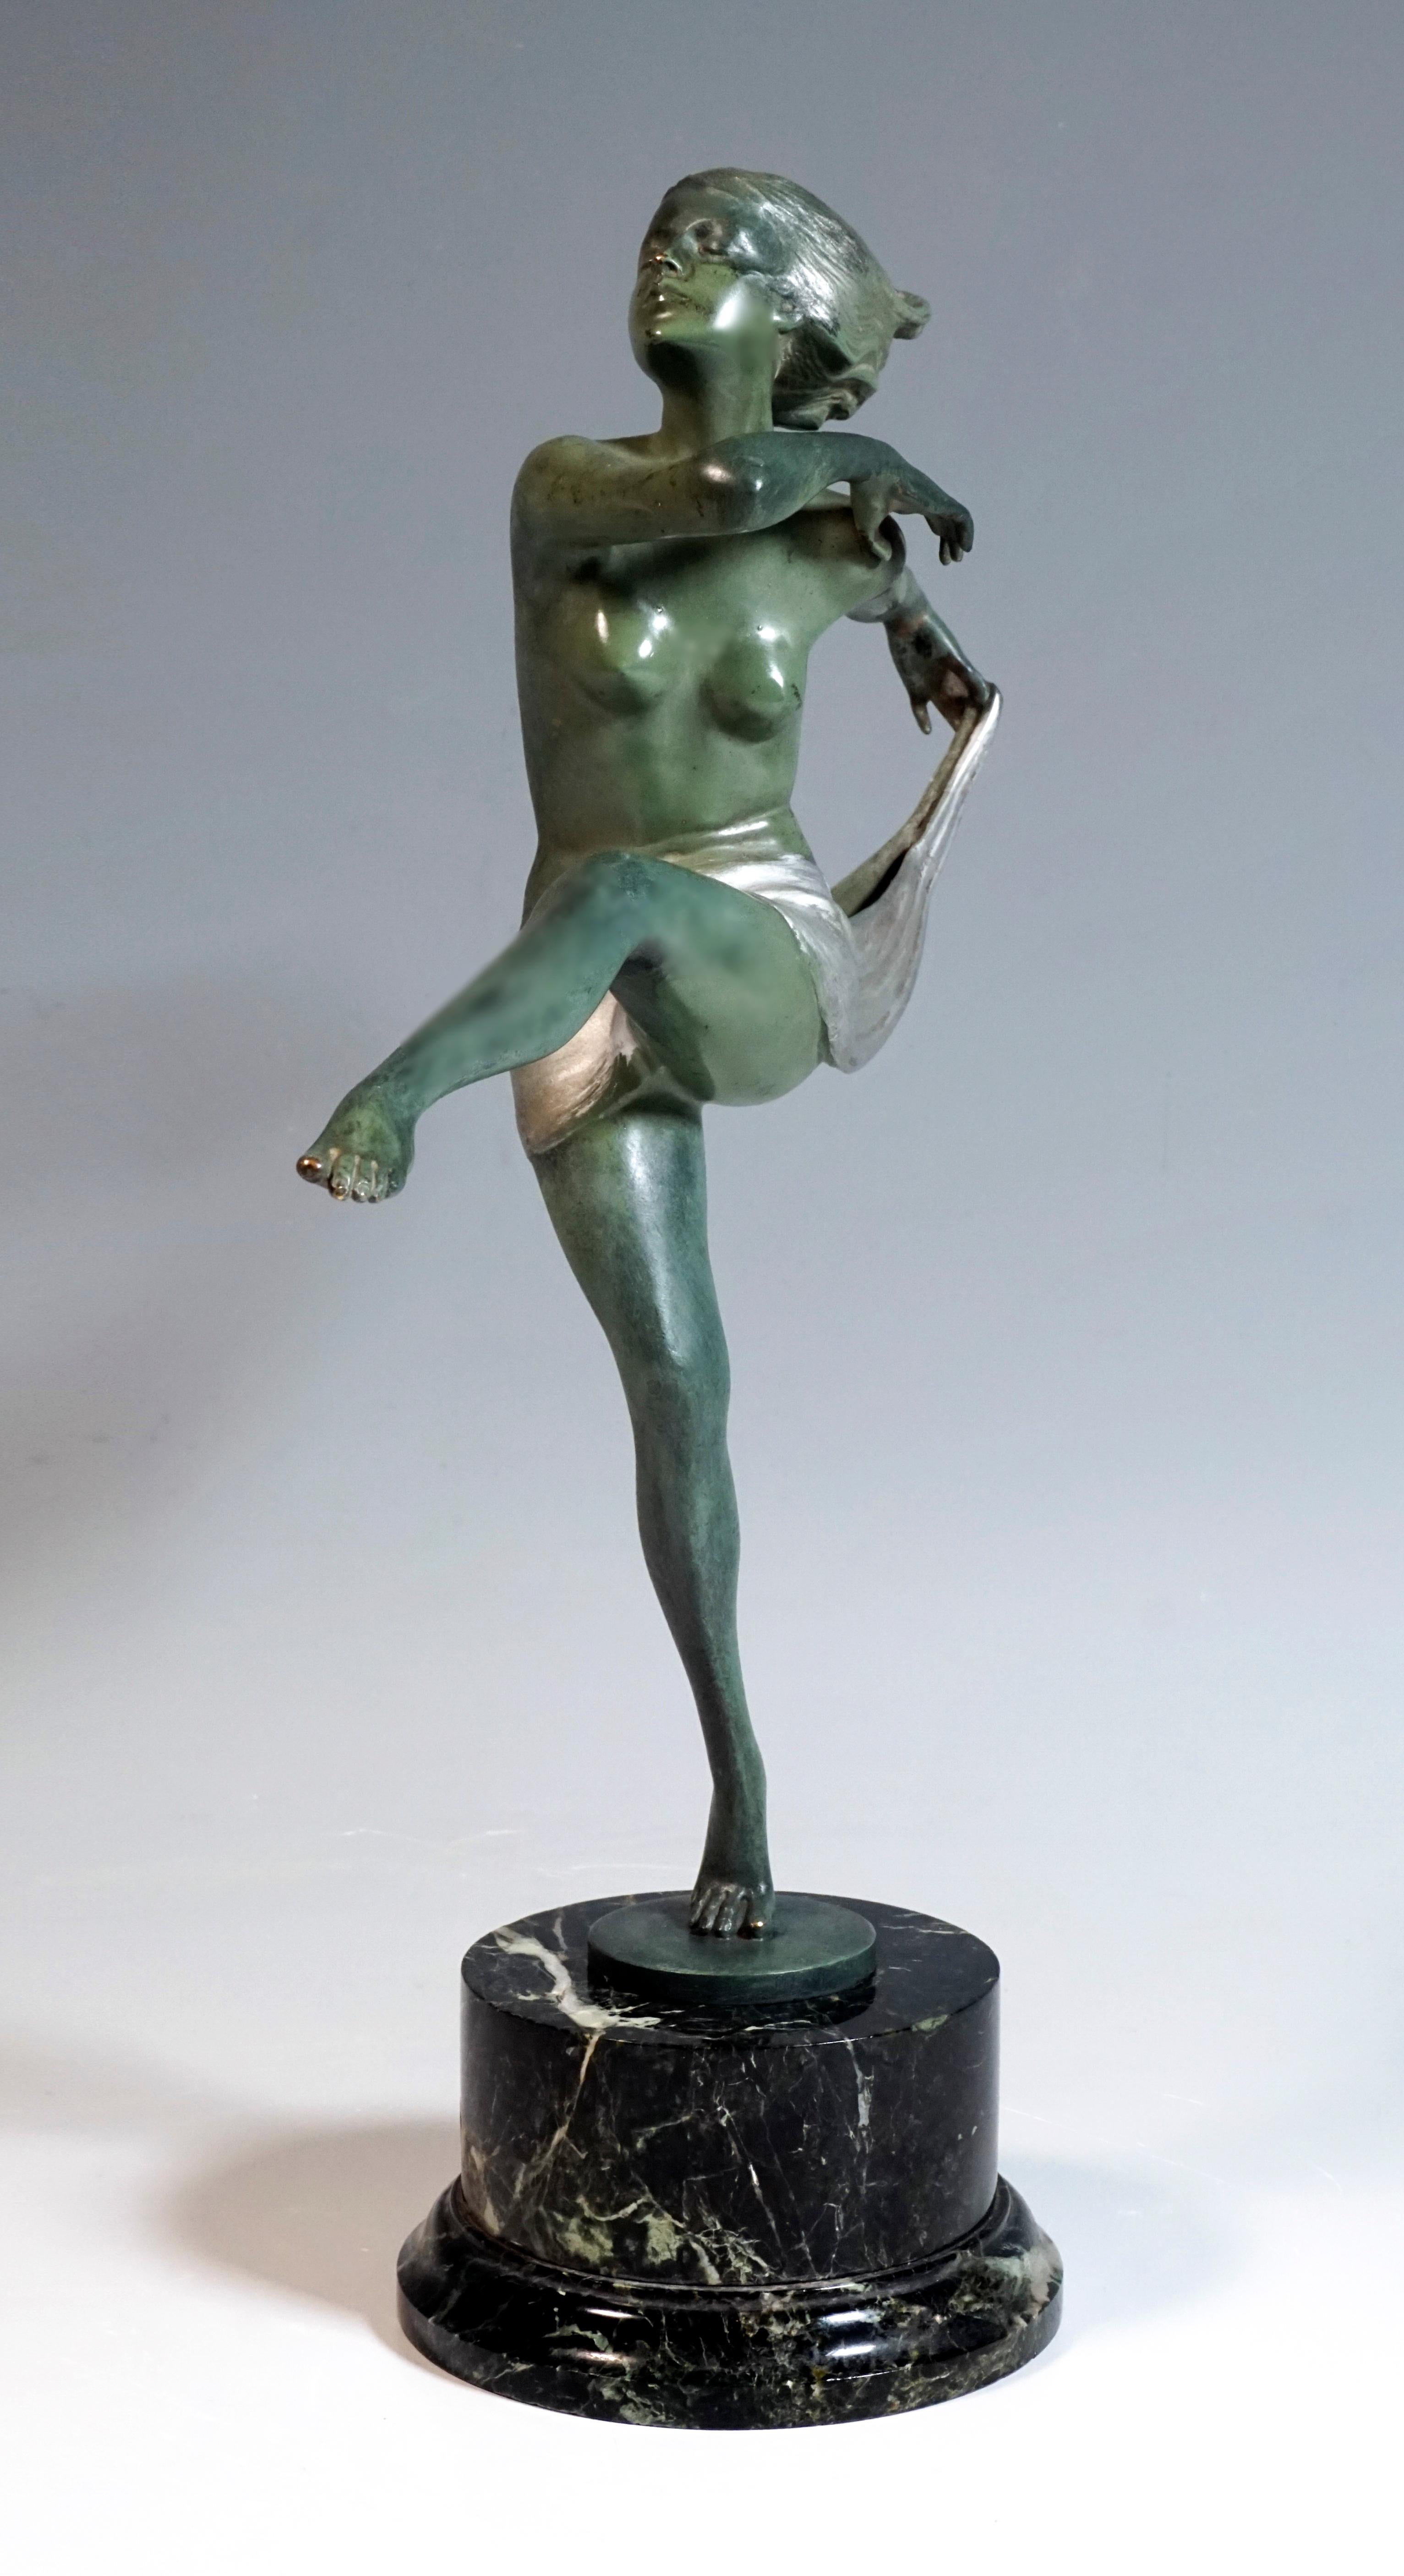 Ausgezeichnetes Stück Wiener Bronzekunst

Die anmutige, nackte Tänzerin mit kurzem, vollem Haar erhebt sich auf den rechten Zehenspitzen, streckt elegant das linke Bein nach vorne, den rechten Arm waagerecht, beugt die Hand neben der linken